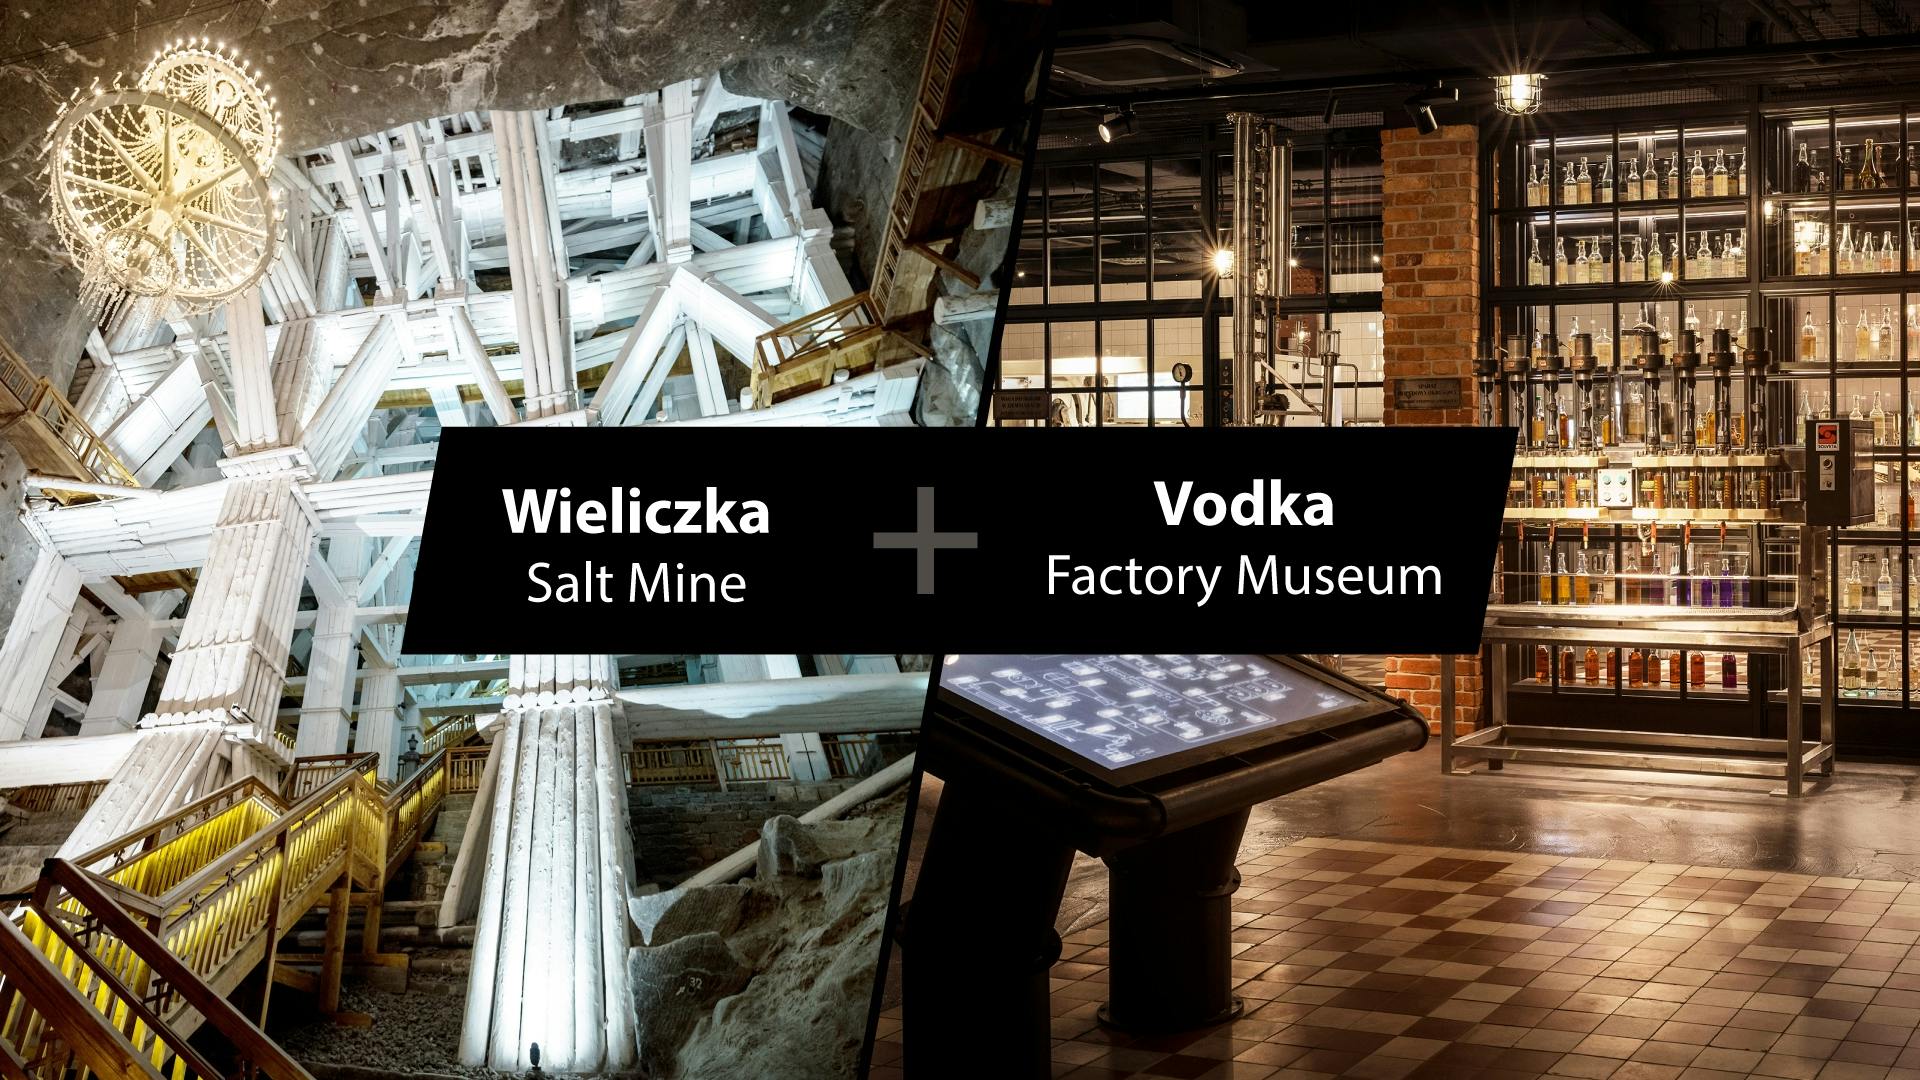 Besichtigung des Salzbergwerks Wieliczka und des Krakauer Wodka-Fabrikmuseums mit Verkostung